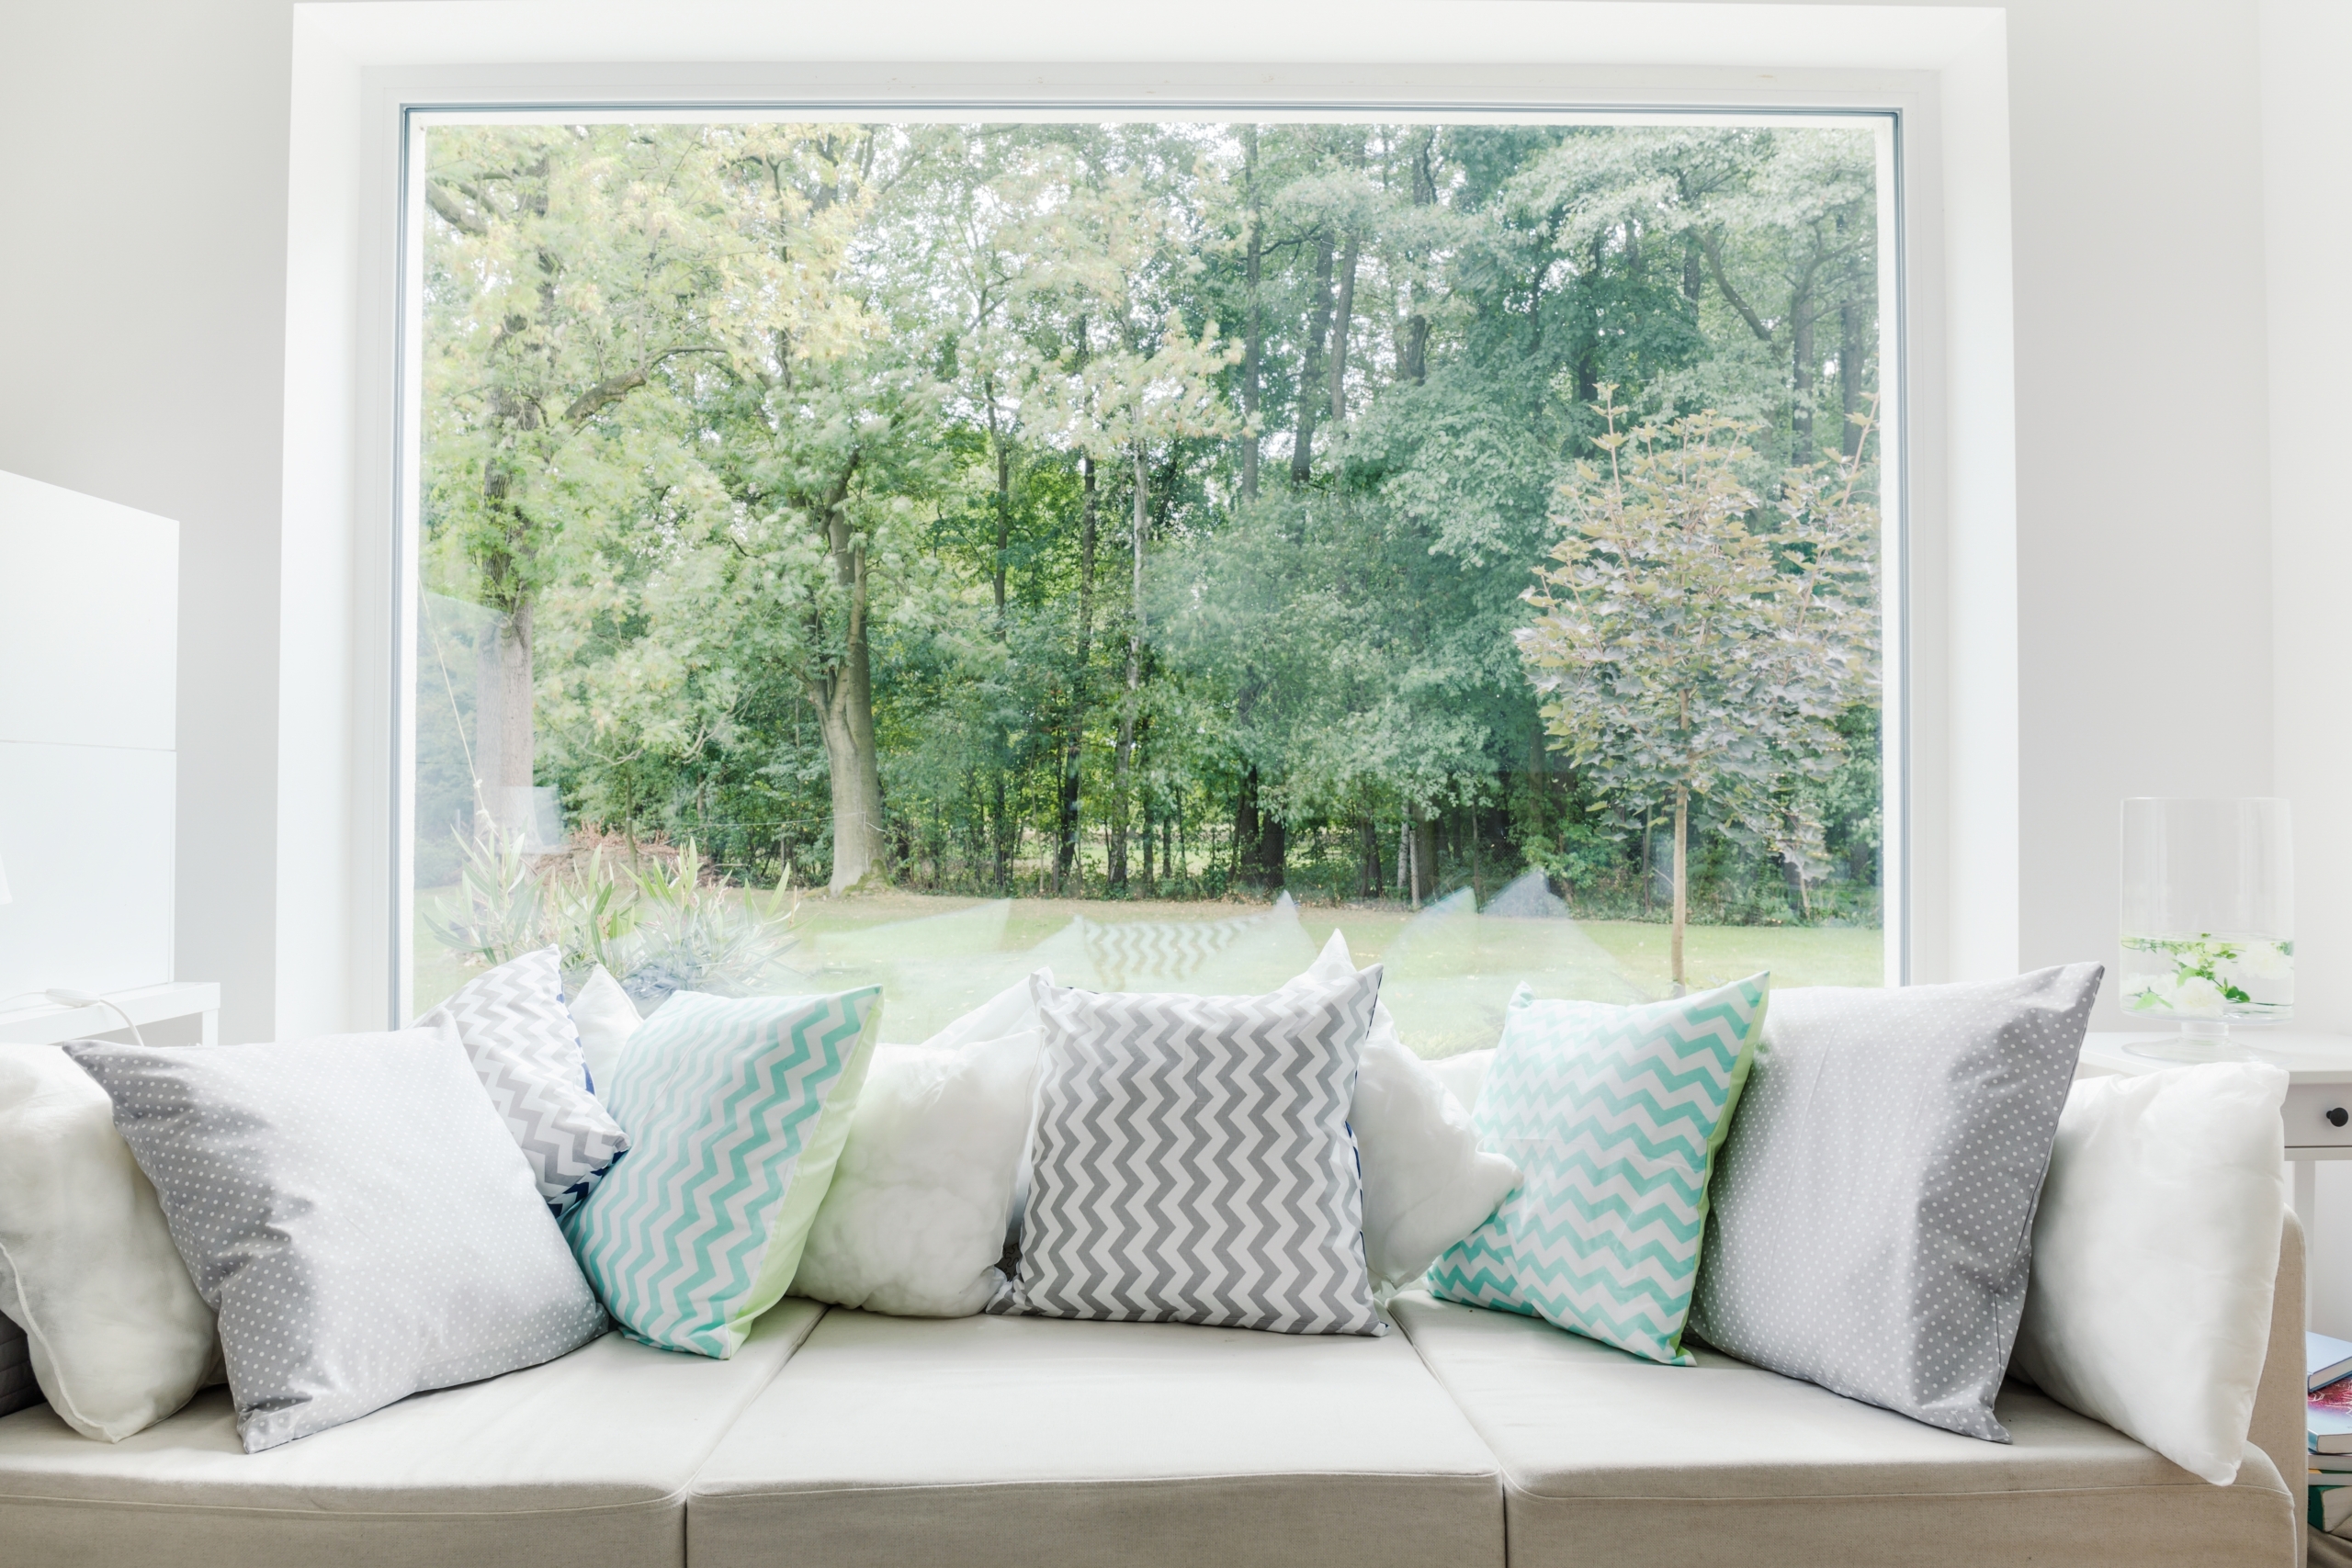 Tạo góc đọc sách thư giãn bên cửa sổ đầy ánh sáng rực rỡ. (Ảnh: Shutterstock)